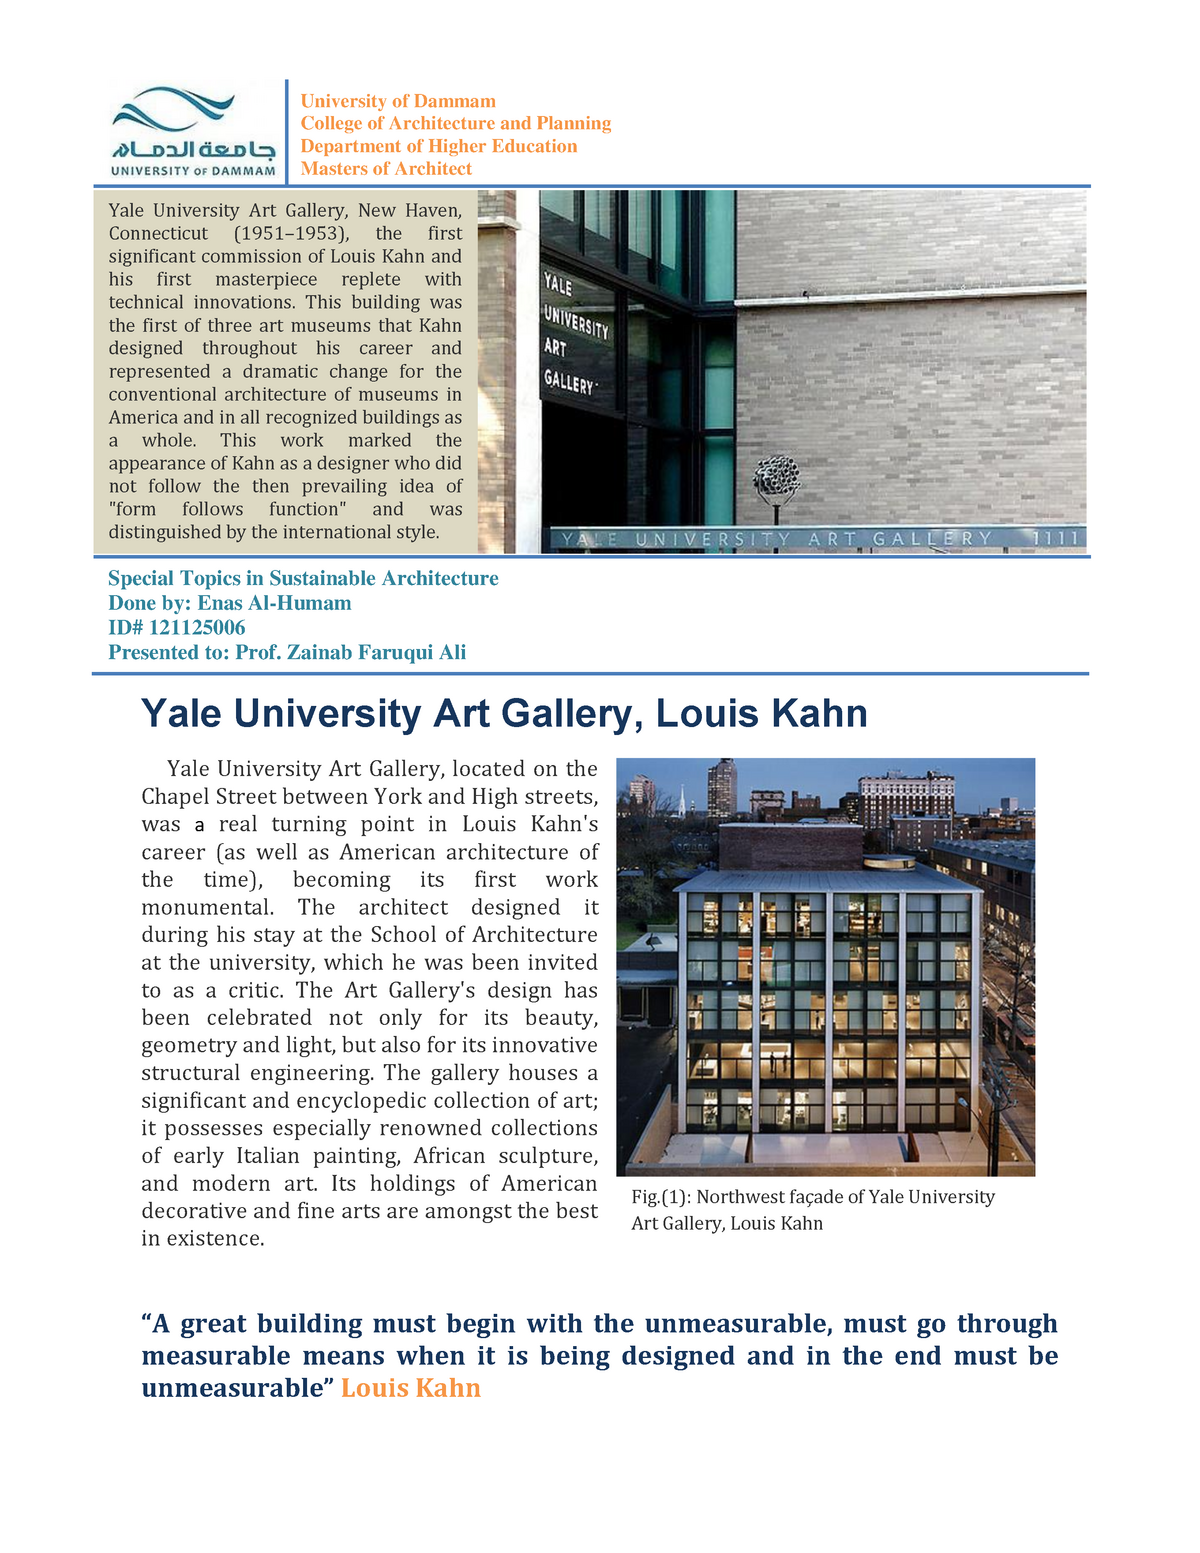 yale university art gallery case study